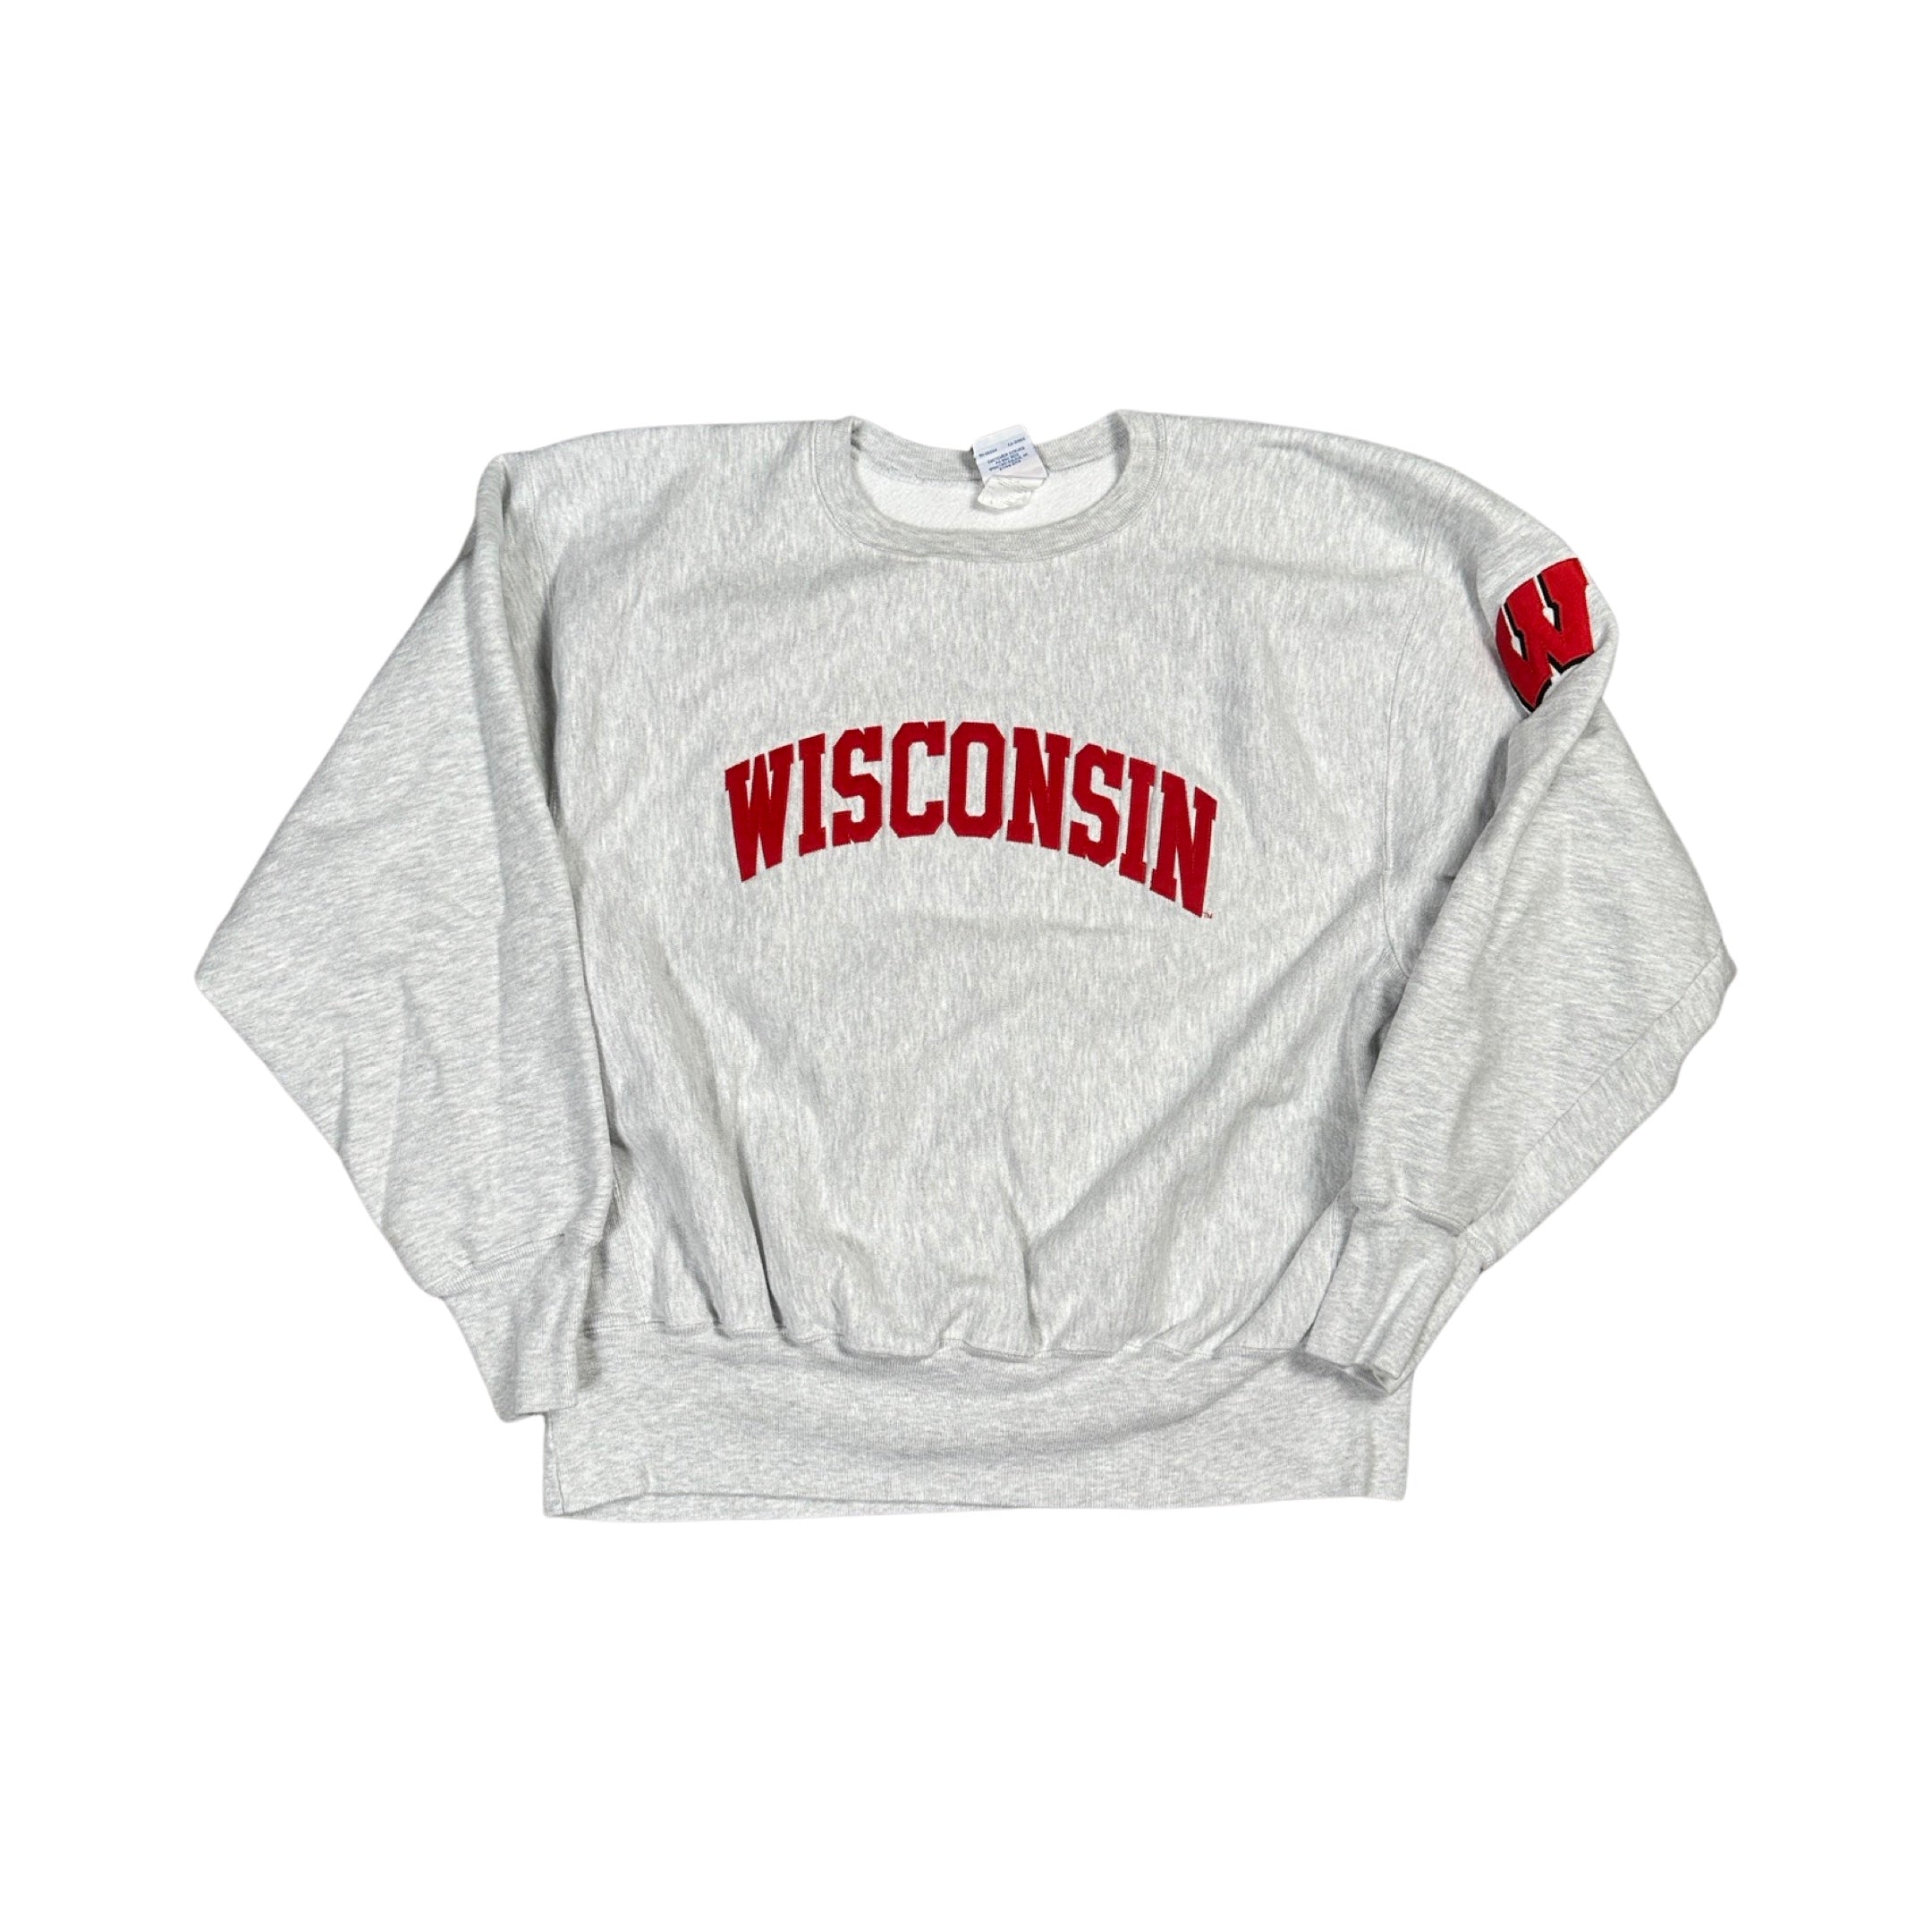 Wisconsin 00s Reverse Weave Sweater (XL)